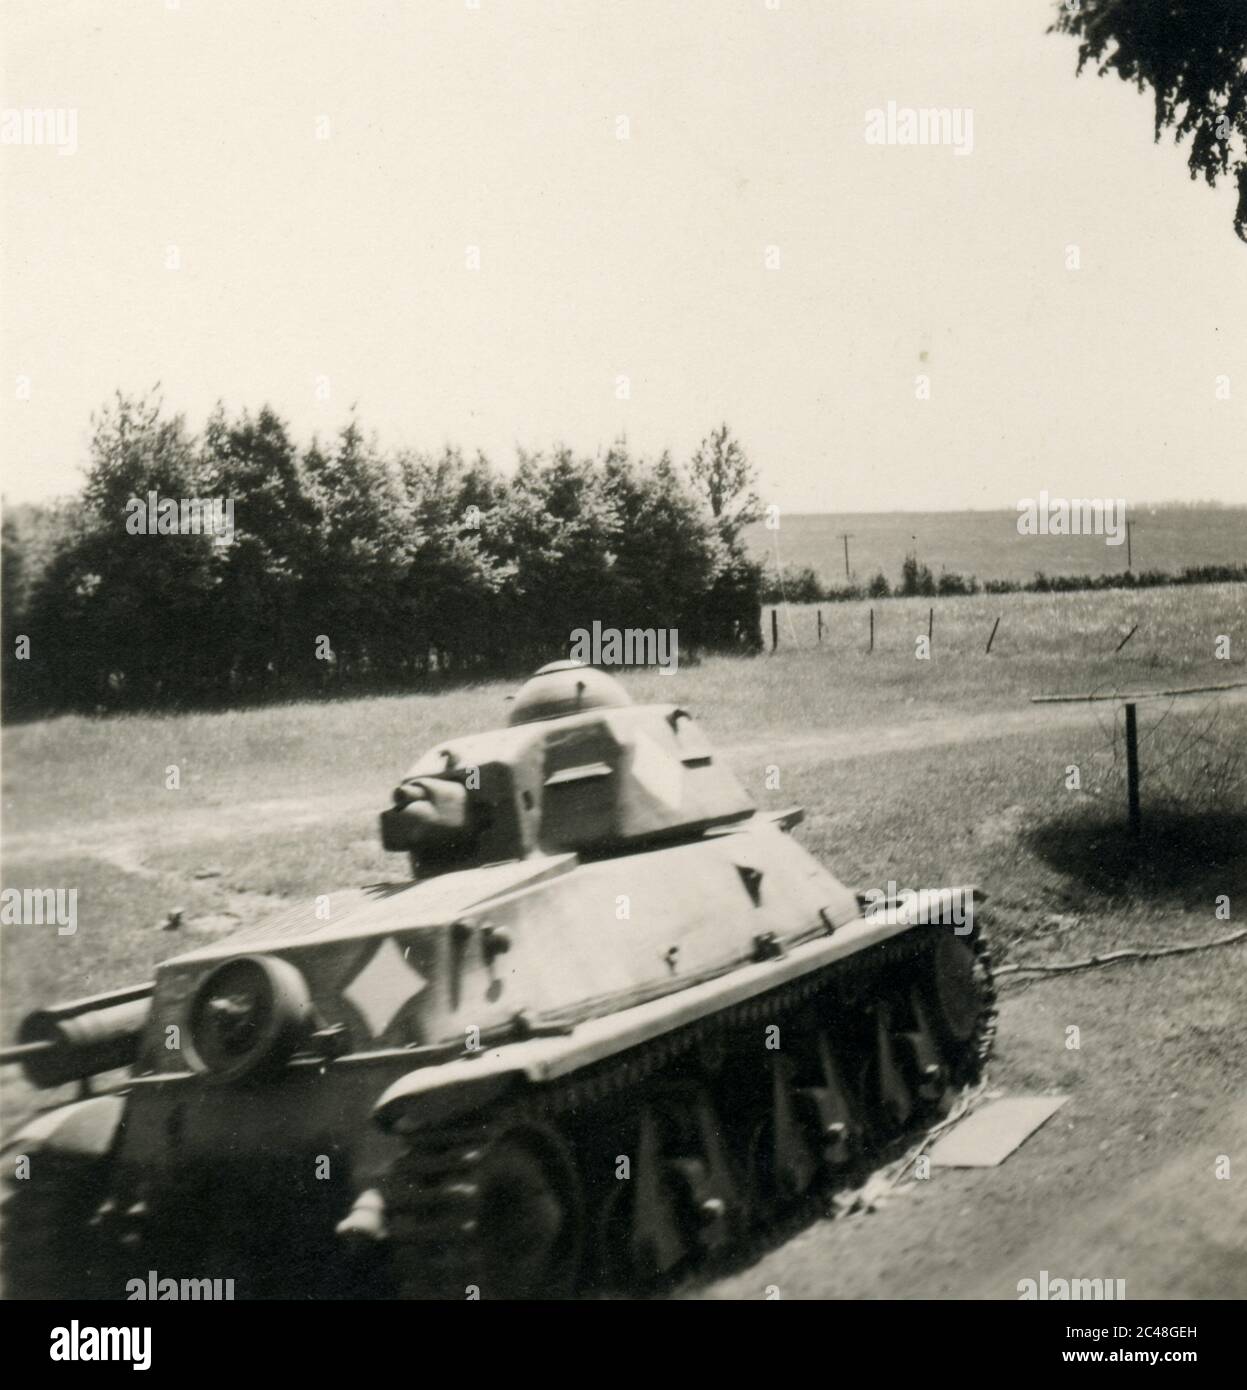 Eventi: Seconda guerra mondiale - i soldati Wehrmacht nazisti occupano il Nord della Francia - Renault R 35 Tank - carro armato di fanteria leggera francese - abbandonato 1940 - 1941 Foto Stock